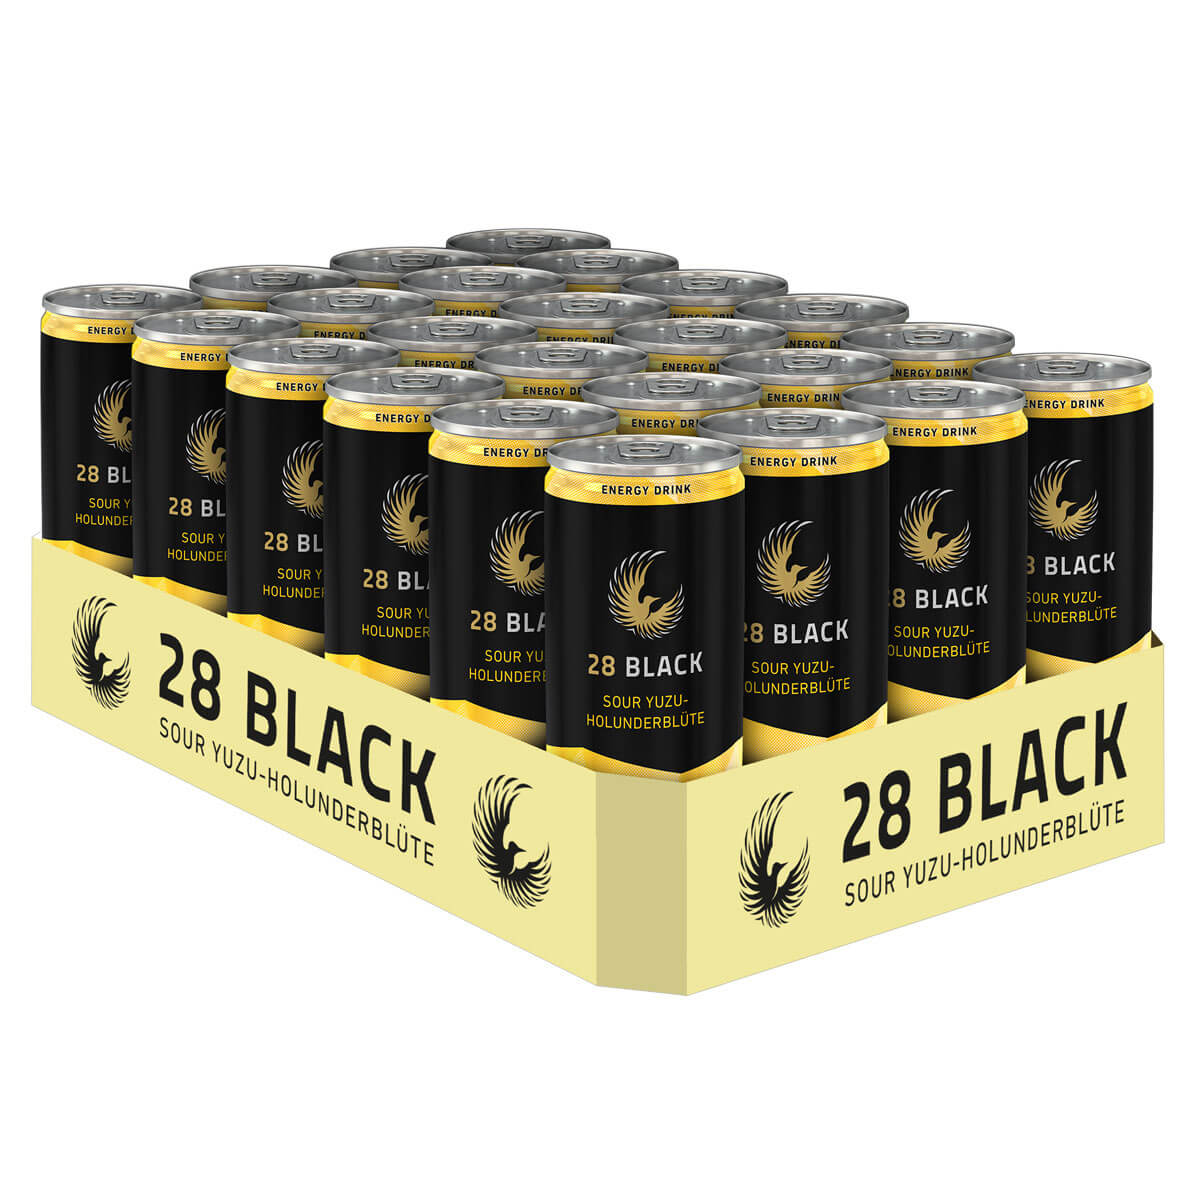 28 BLACK Sour Yuzu-Holunderblüte 24er Tray